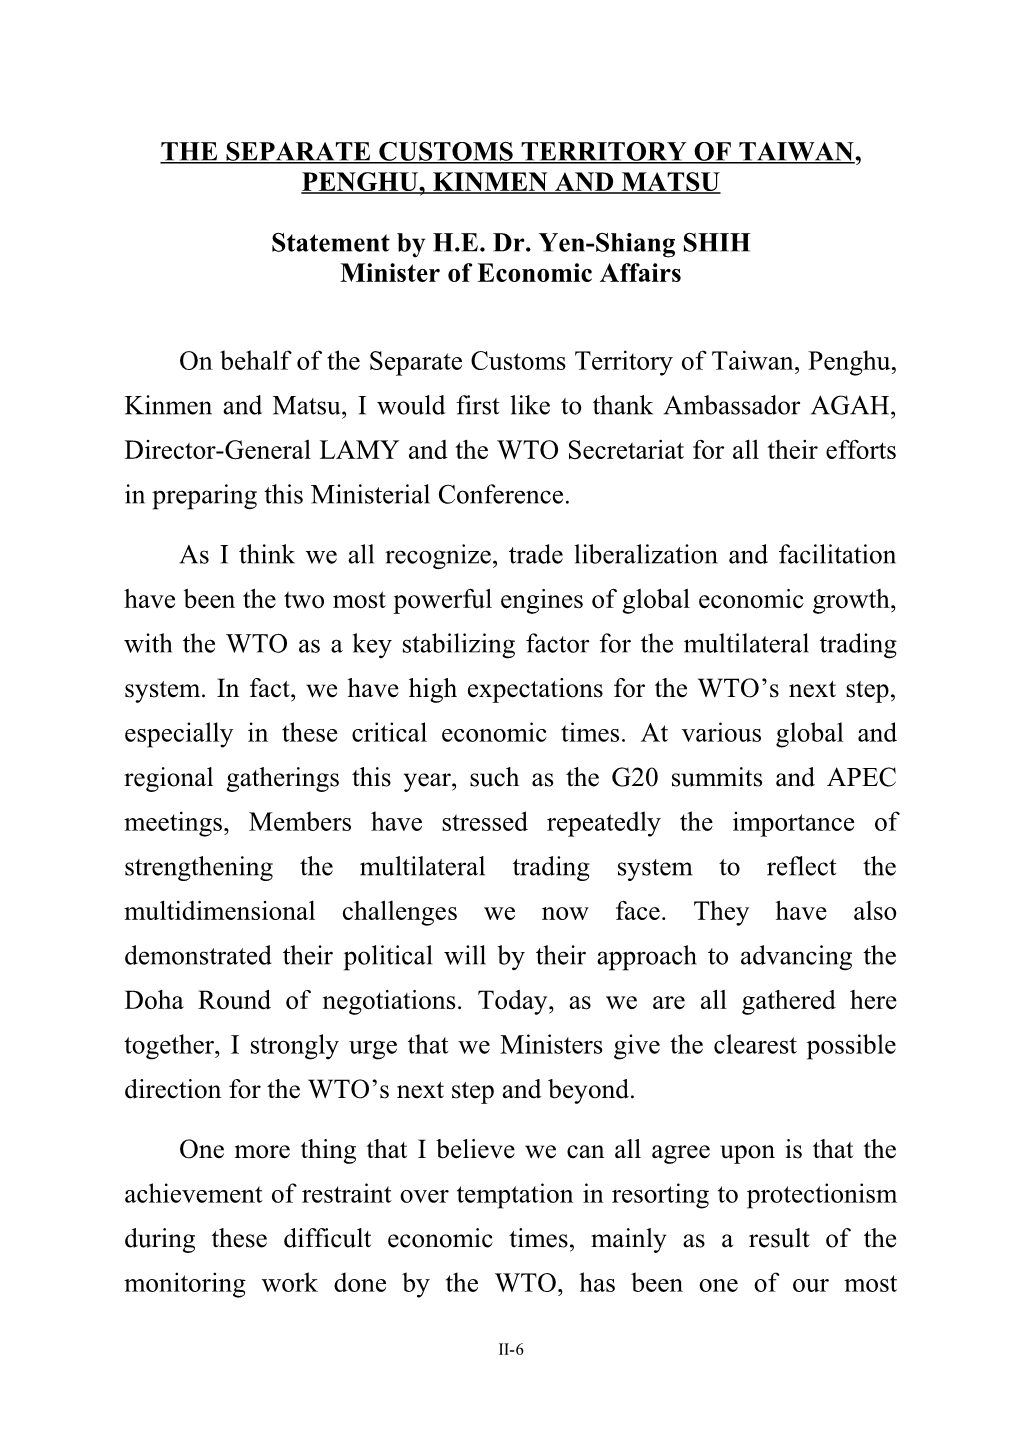 Statement by H.E.Dr. Yen-Shiang SHIH